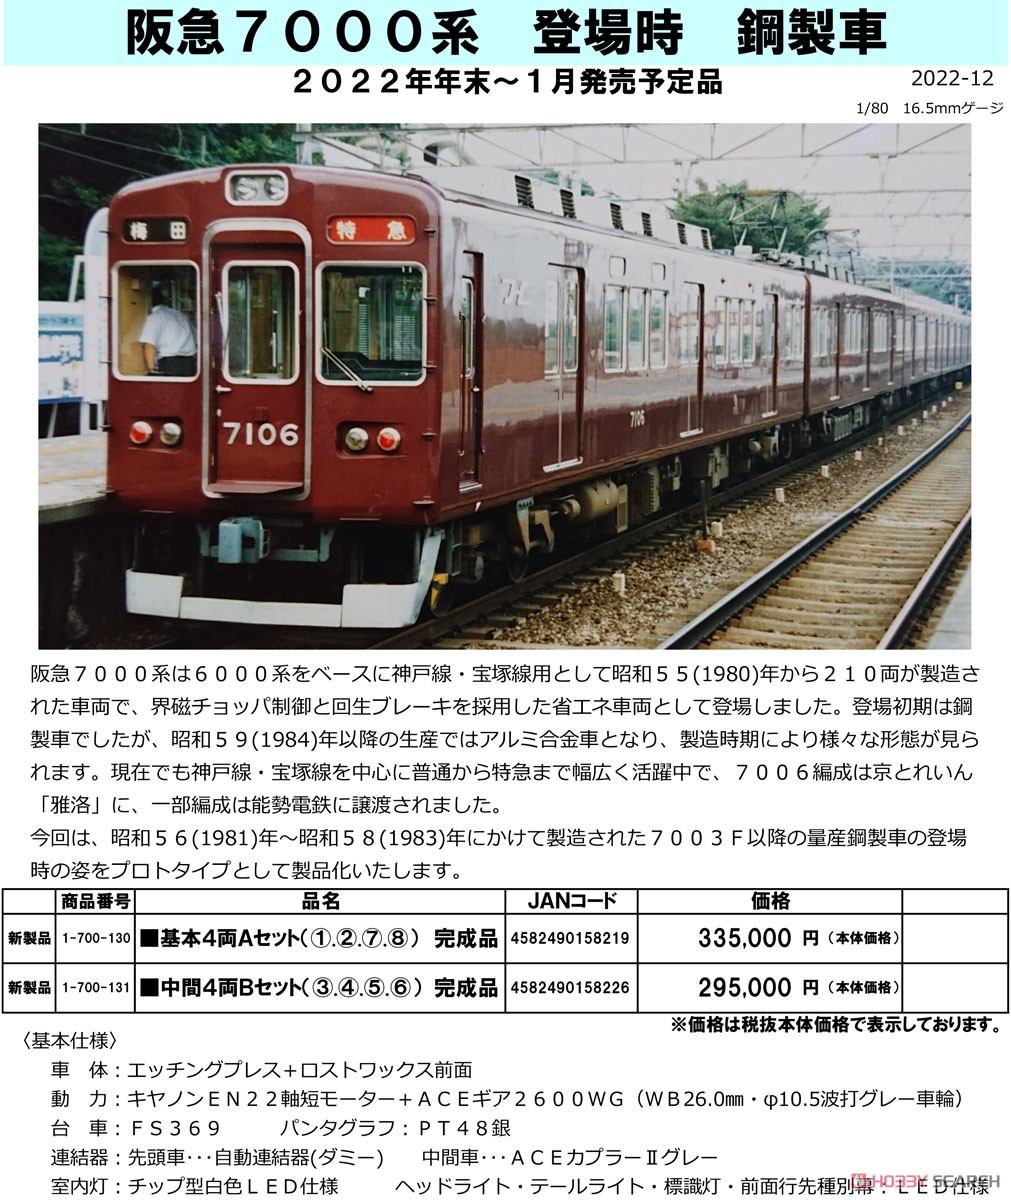 16番(HO) 阪急 7000系 登場時 鋼製車 基本4両Aセット (1.2.7.8) 完成品 (基本・4両セット) (塗装済み完成品) (鉄道模型) その他の画像2